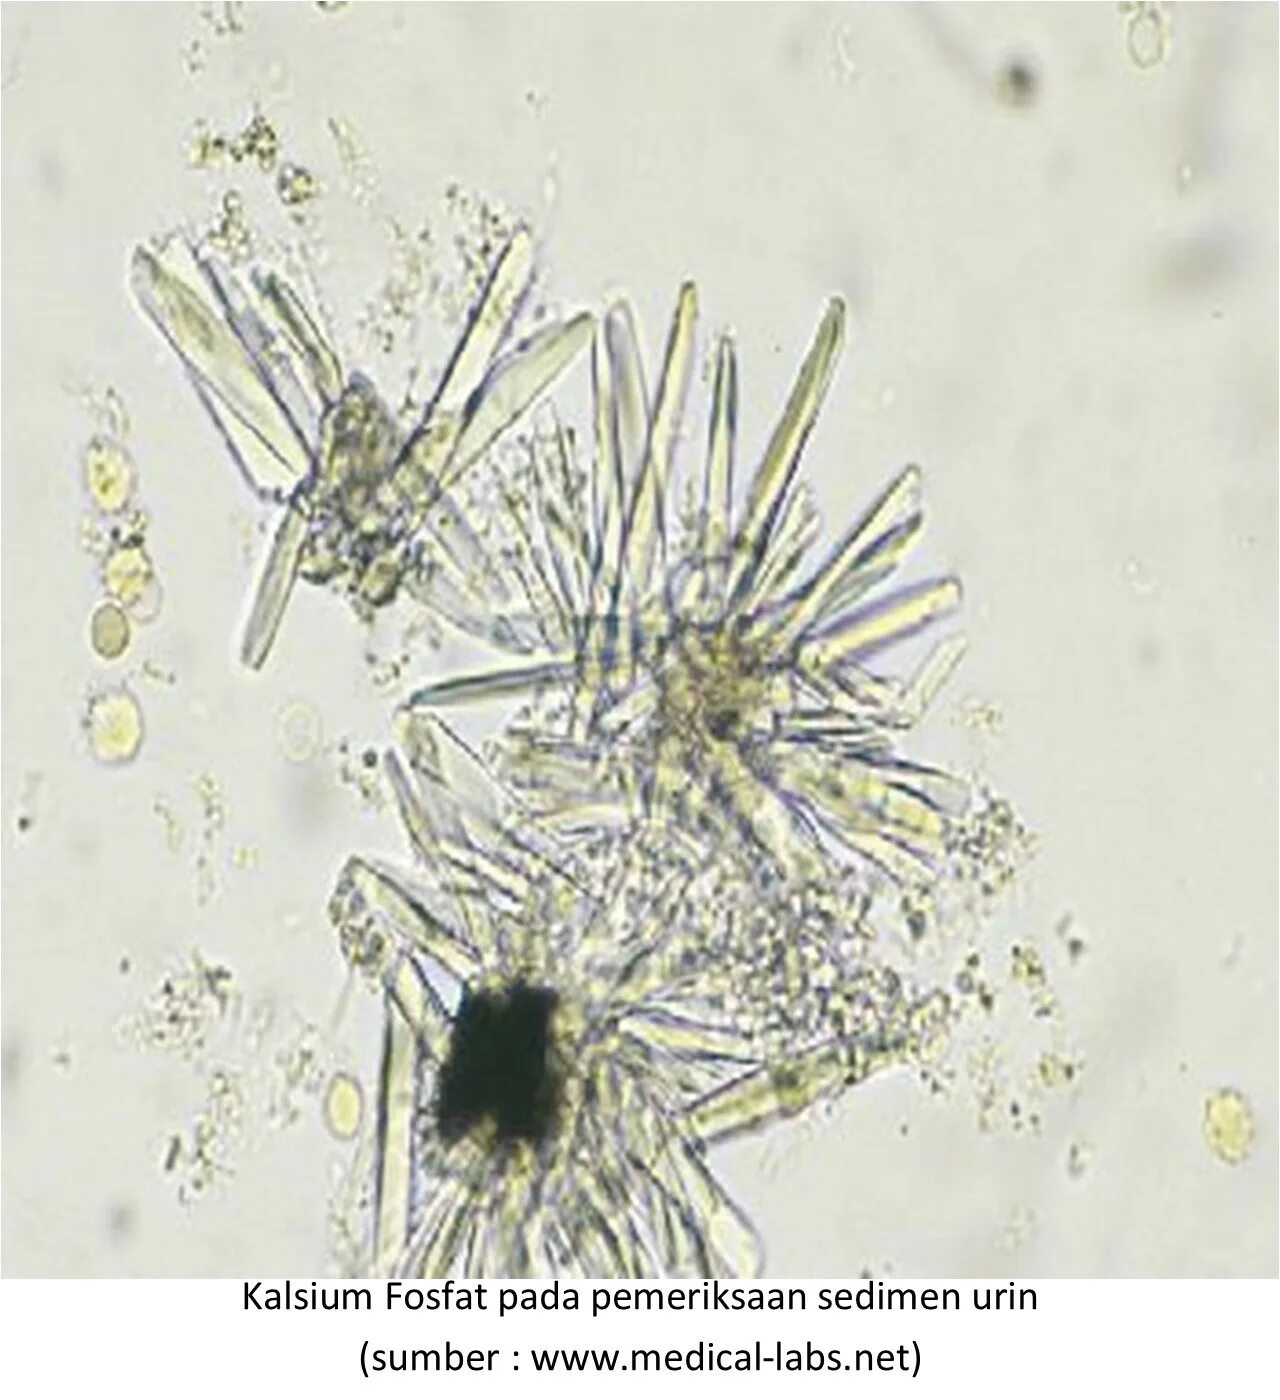 Иглы в моче. Кальция фосфат в моче микроскопия. Кристаллы фосфата кальция в моче. Фосфорнокислый кальций в моче микроскопия. Фосфорнокислый кальций Кристаллы в моче.